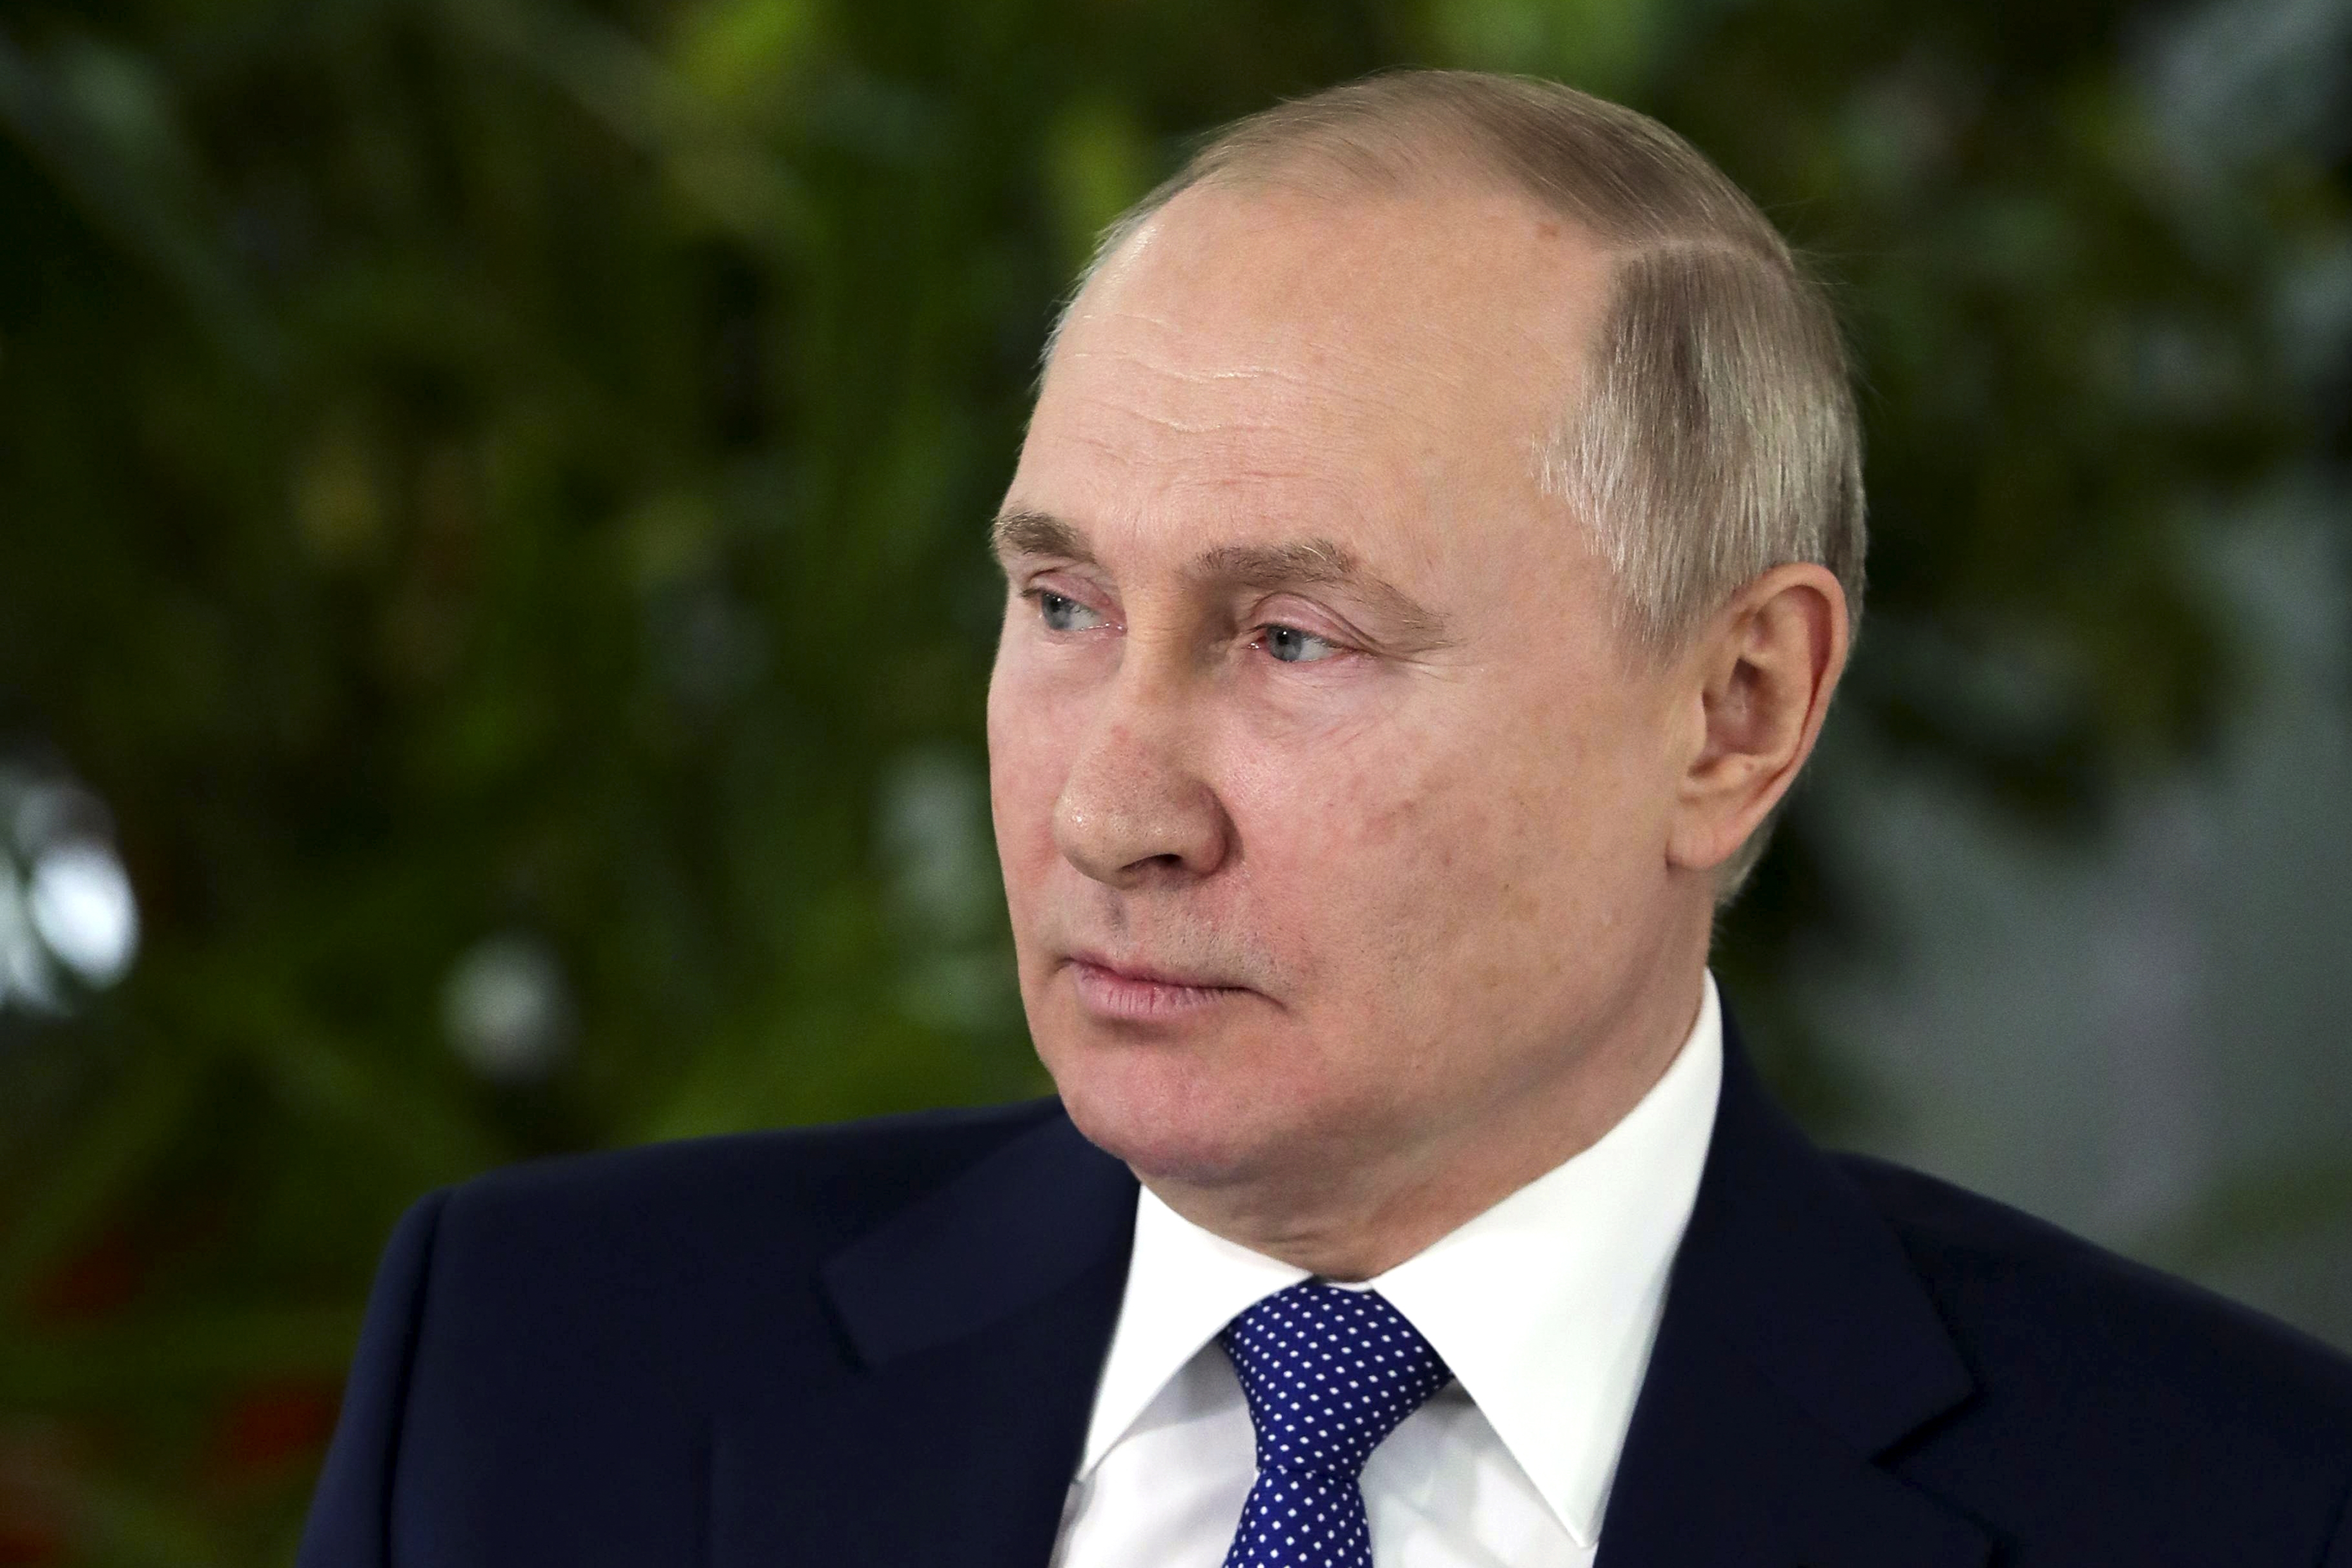 بوتين يقول إن العقوبات المفروضة على روسيا ترقى إلى مستوى “إعلان الحرب”